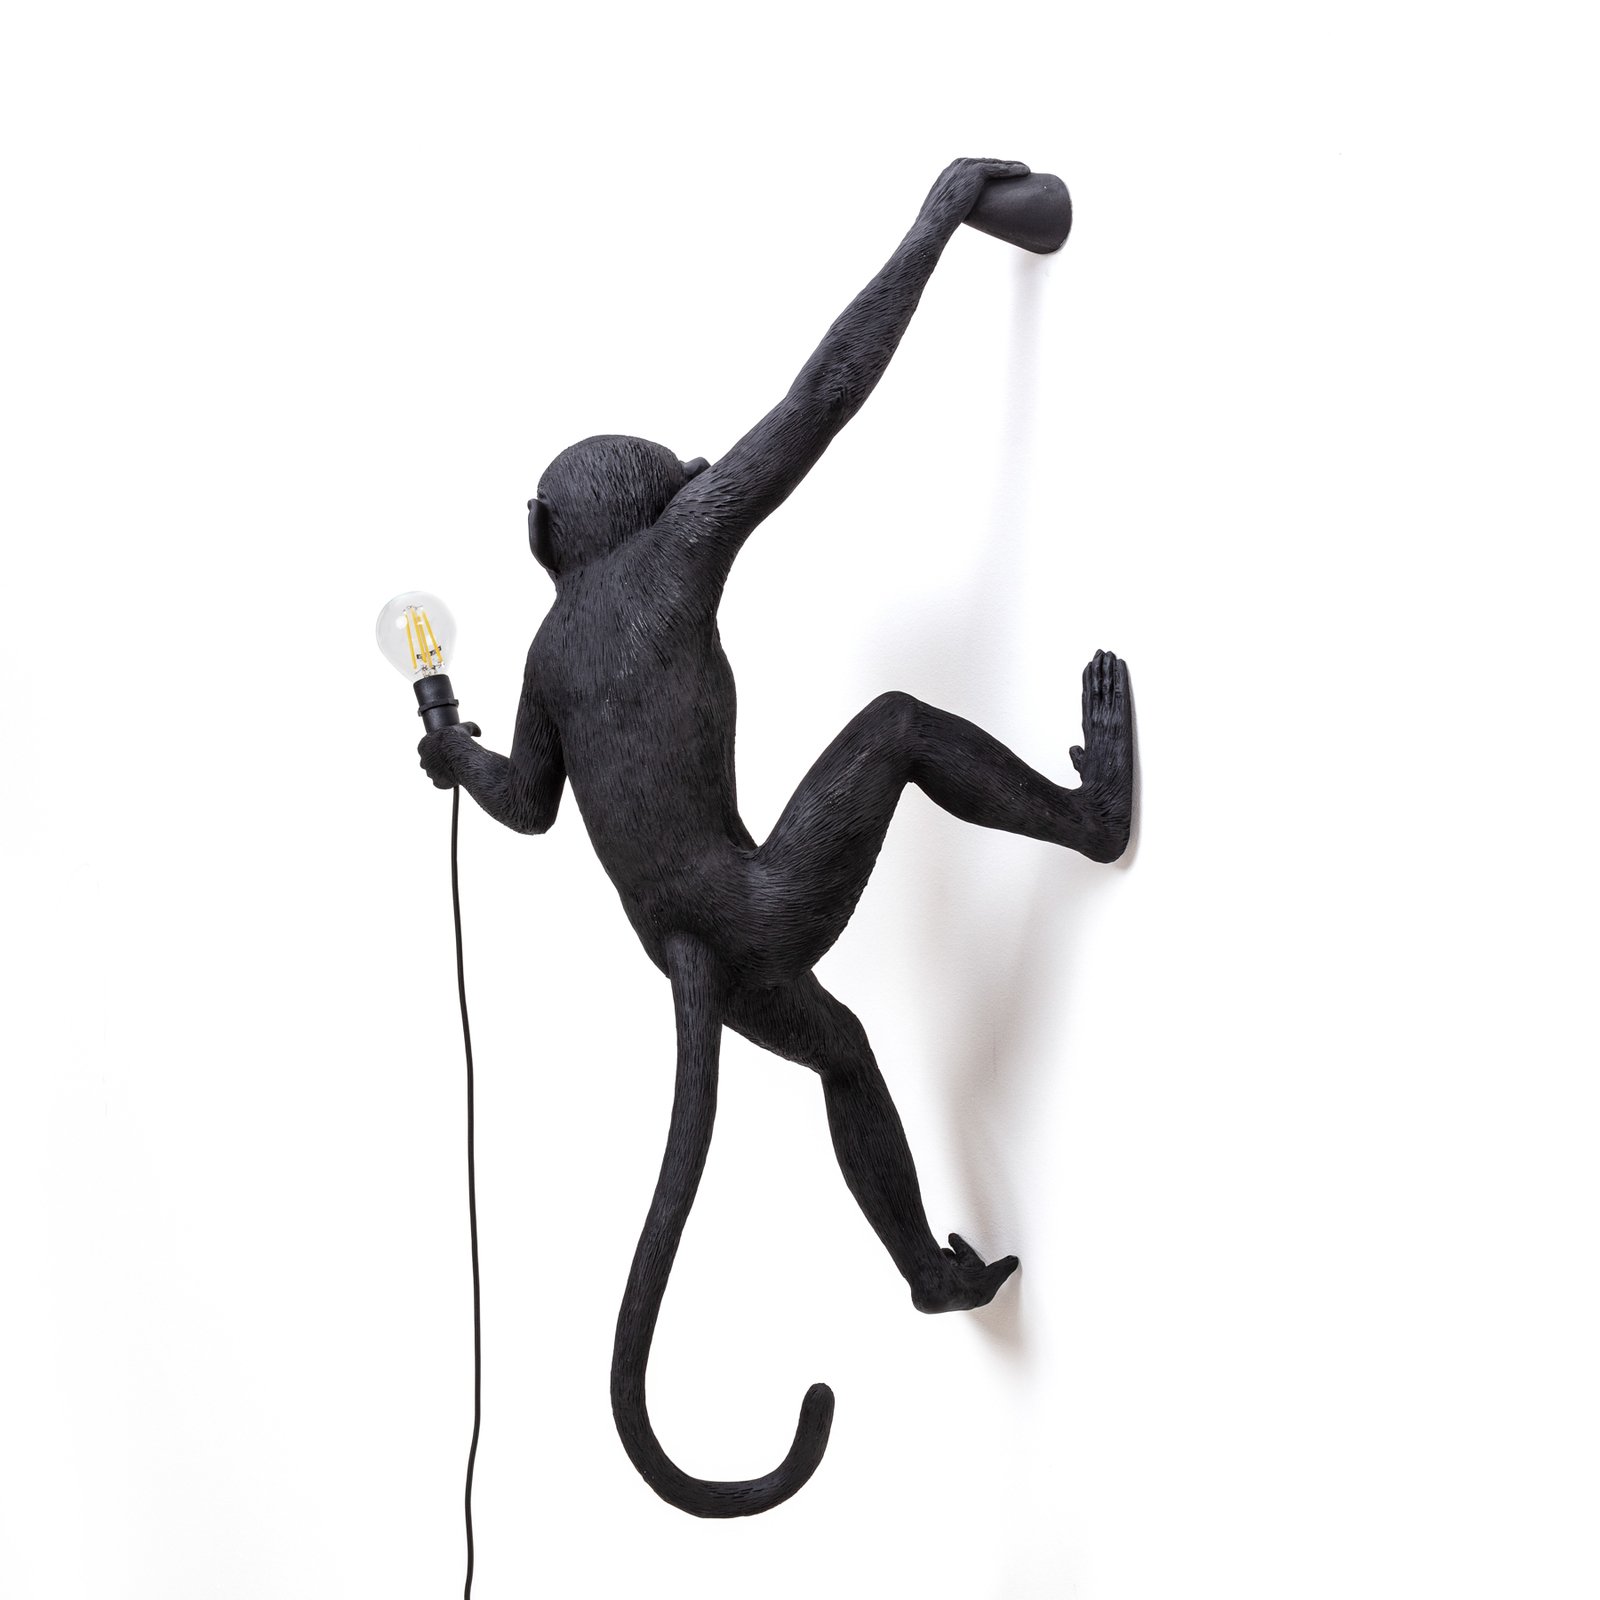 SELETTI Monkey Lamp dekoratyvinis sieninis šviestuvas dešinėje juodoje